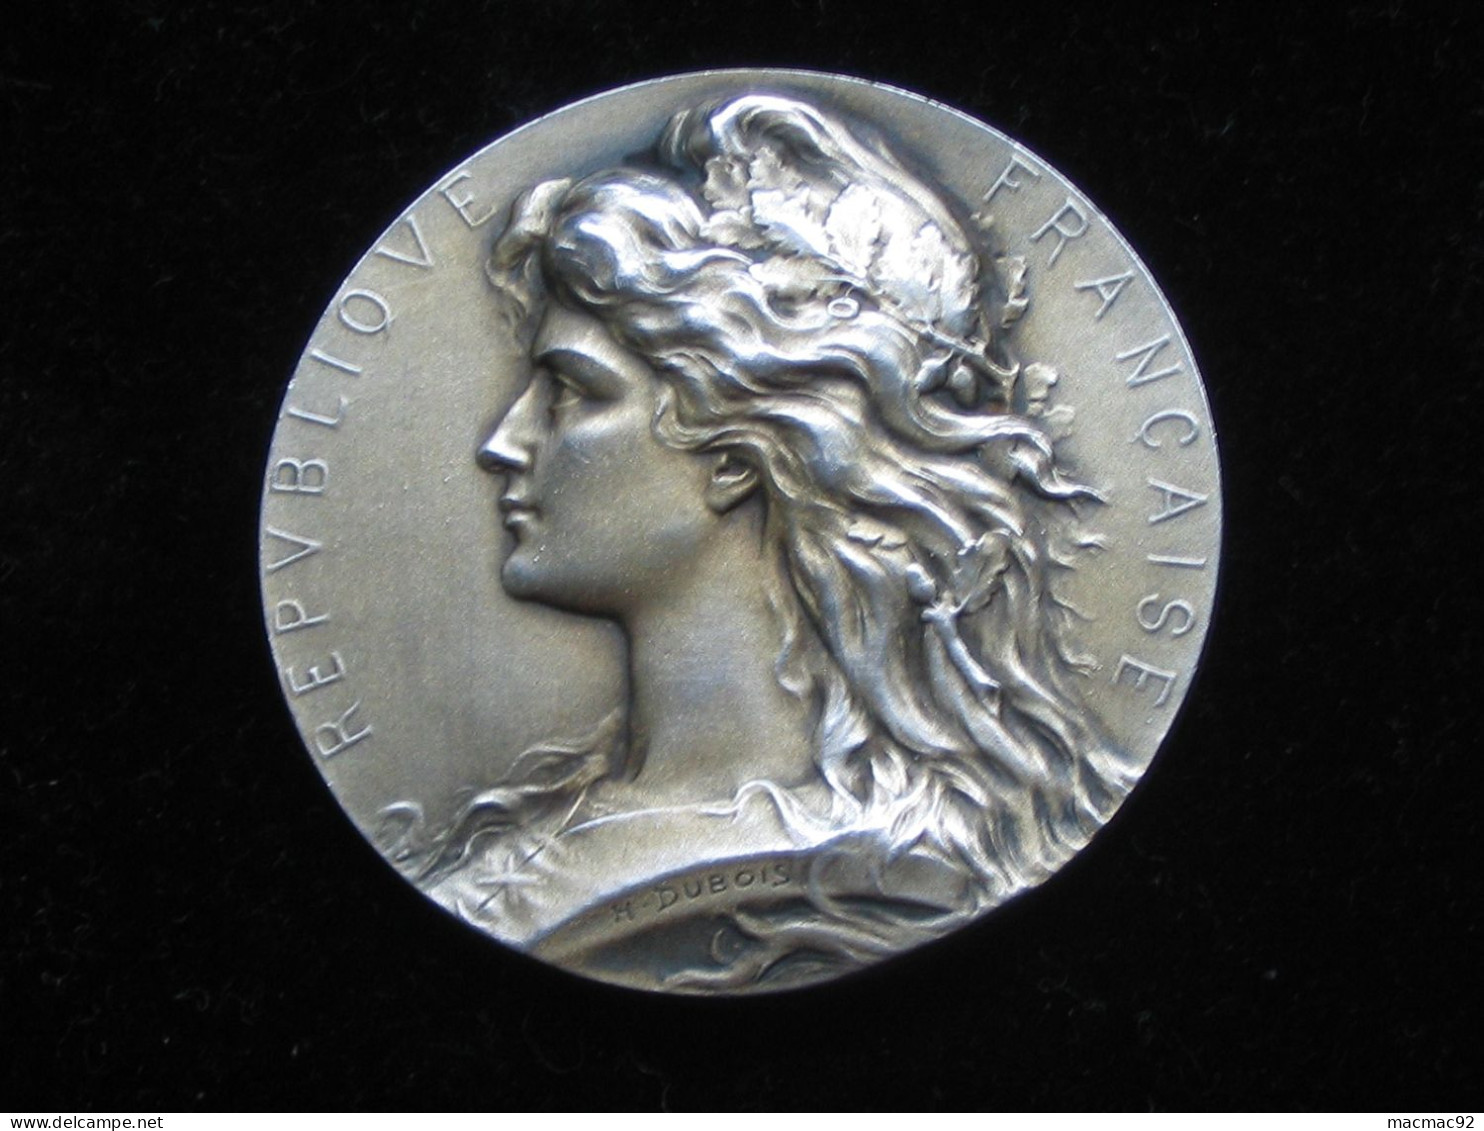 Médaille EN ARGENT -Société D'Horticulture D'ALGERIE   **** EN ACHAT IMMEDIAT **** - Firma's